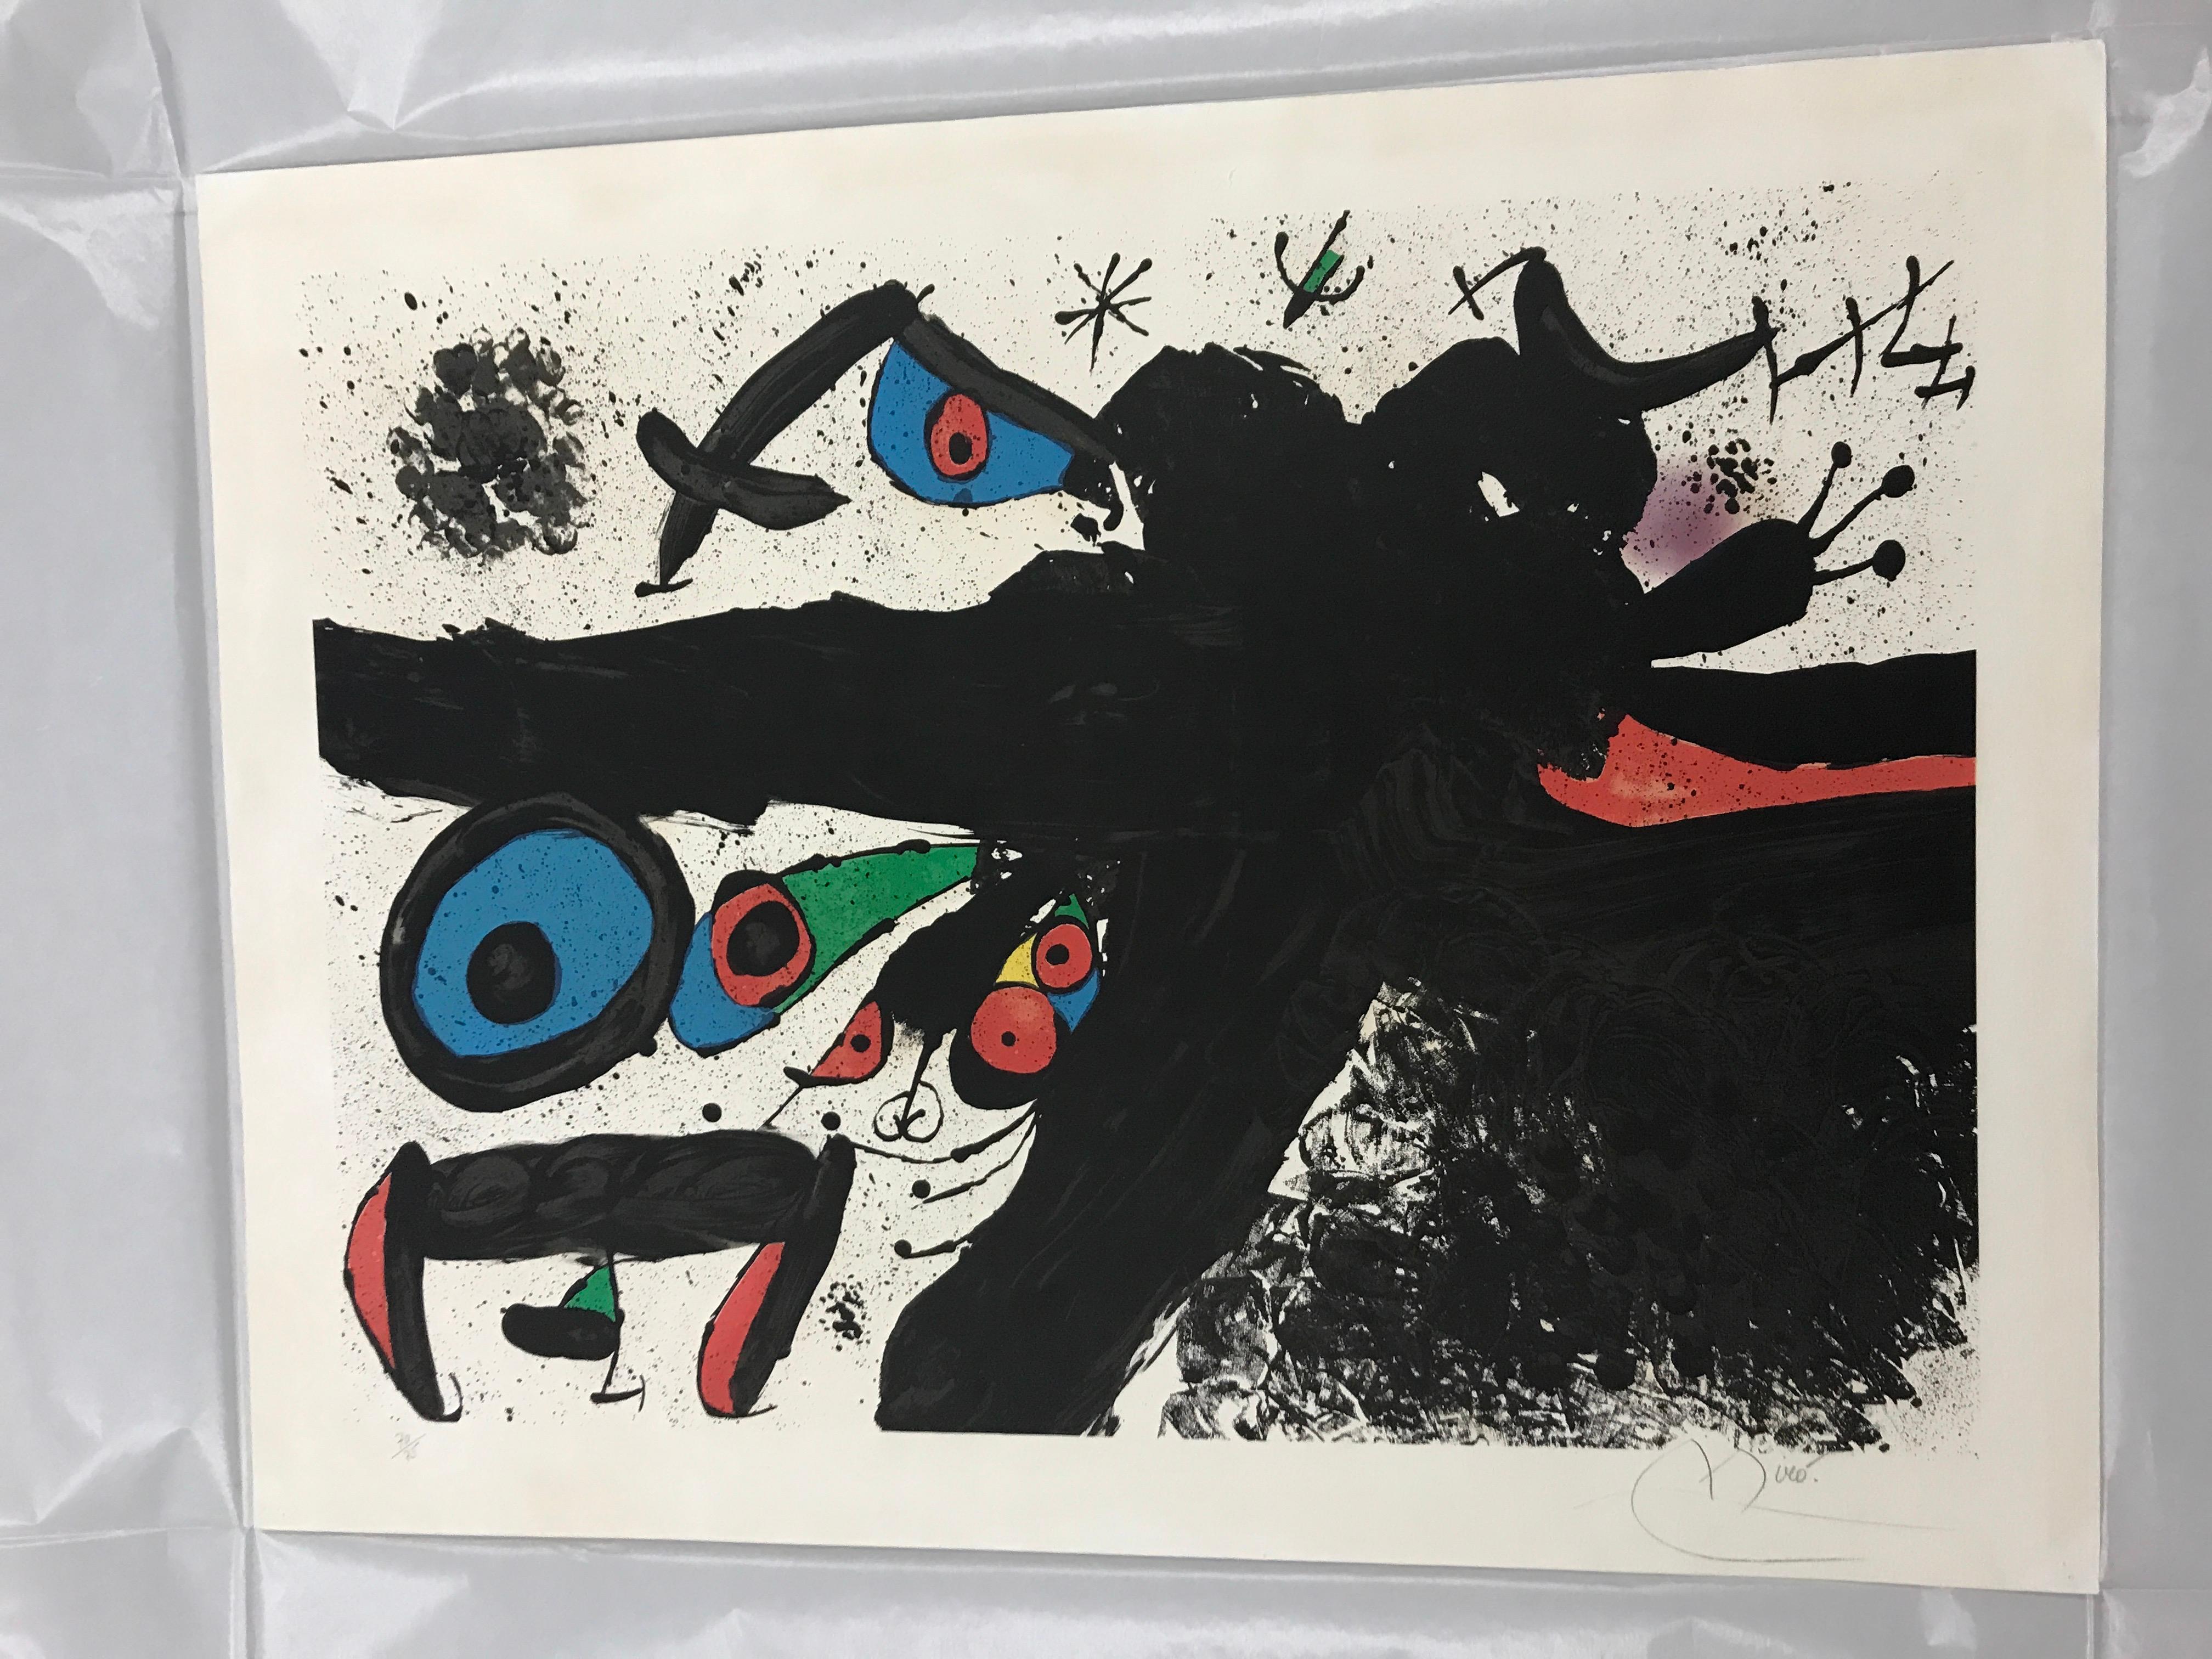 Homenatge à Joan Prats – Print von Joan Miró